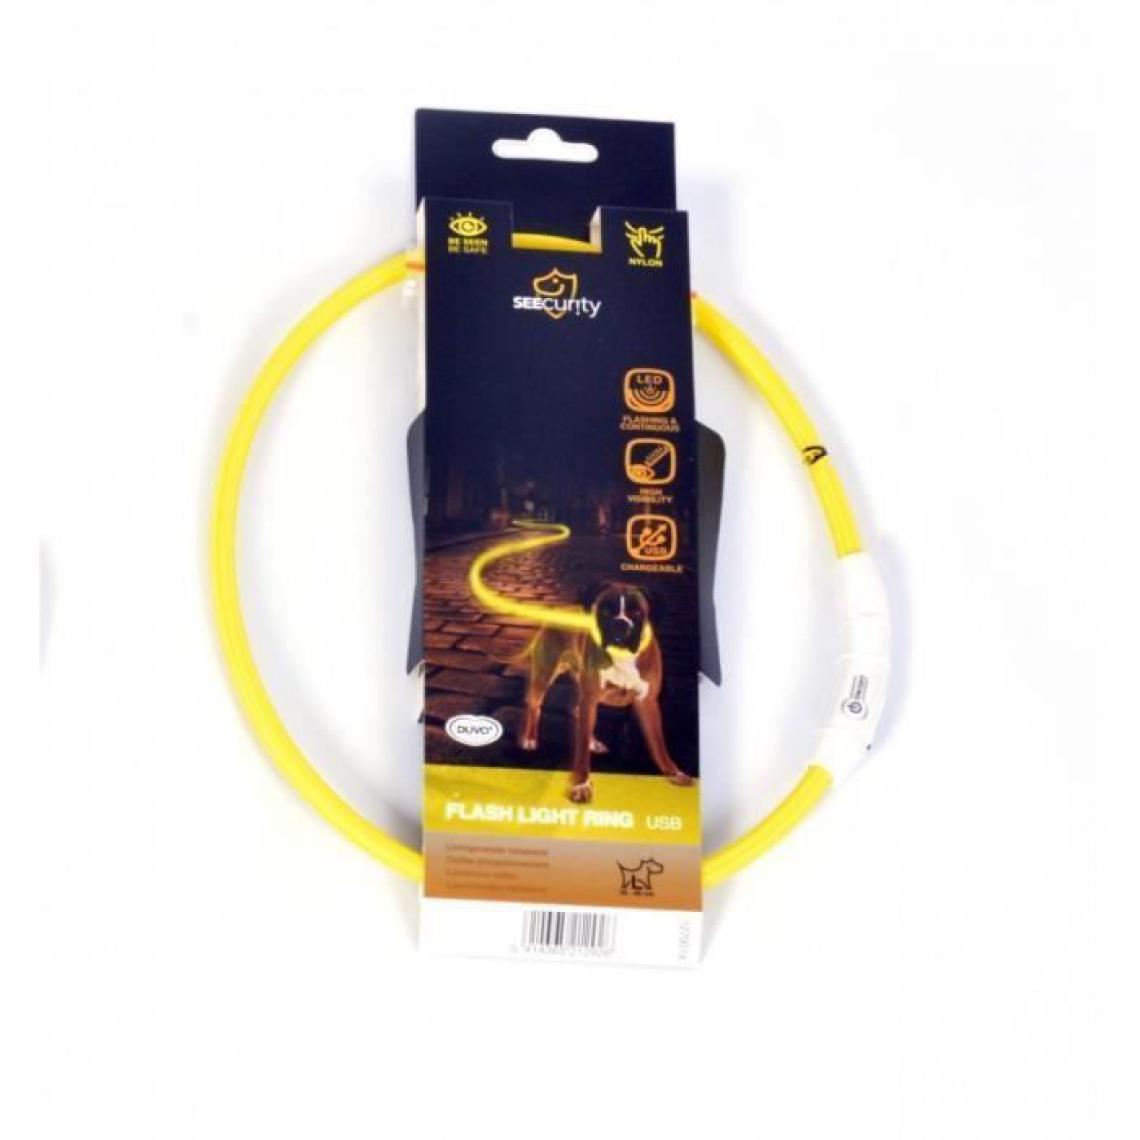 Sans Marque - DUVO Anneau Lumineux Seecurity Flash Light Ring USB Nylon - 35 cm - Jaune - Pour chien - Collier pour chien